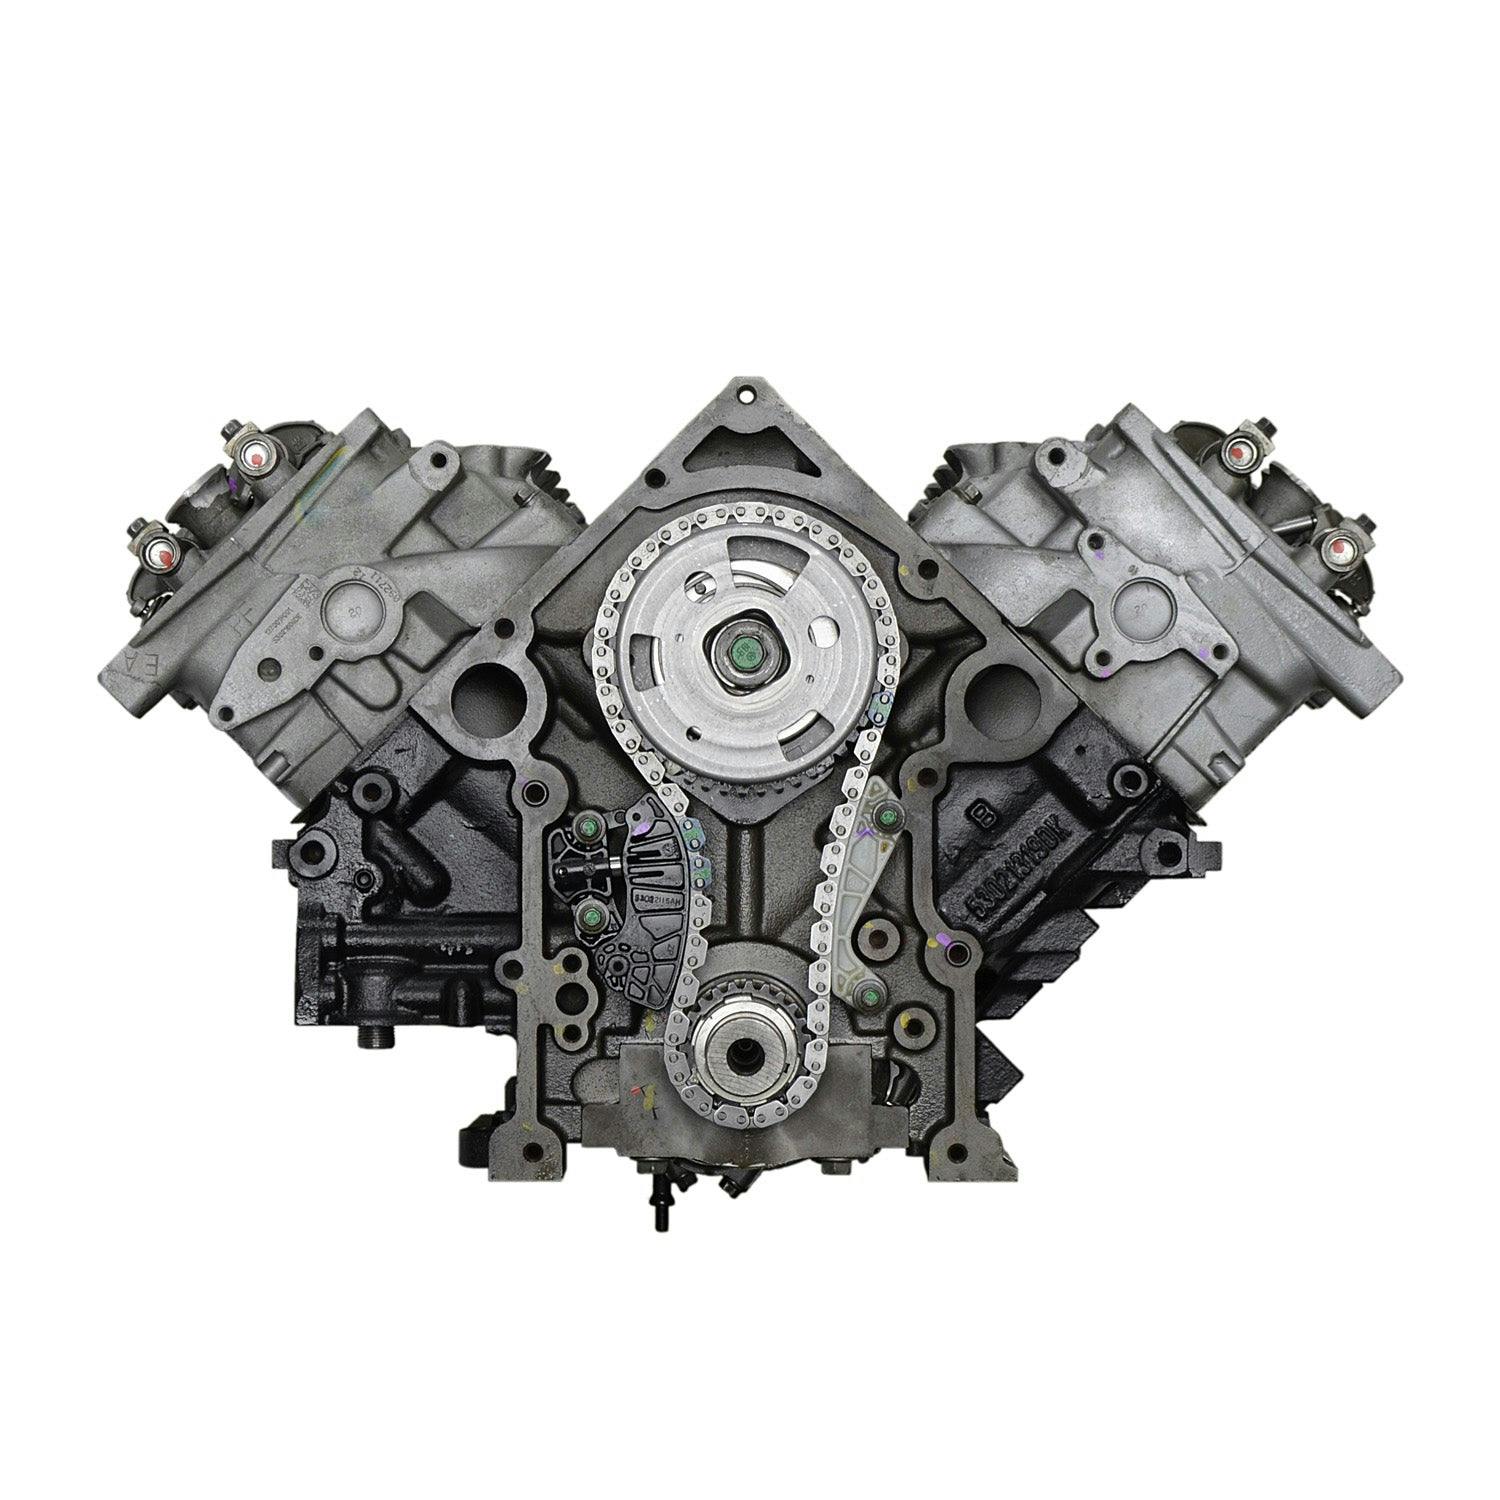 5.7L V8 Engine for 2009 Chrysler Aspen/Dodge Durango, Ram 1500